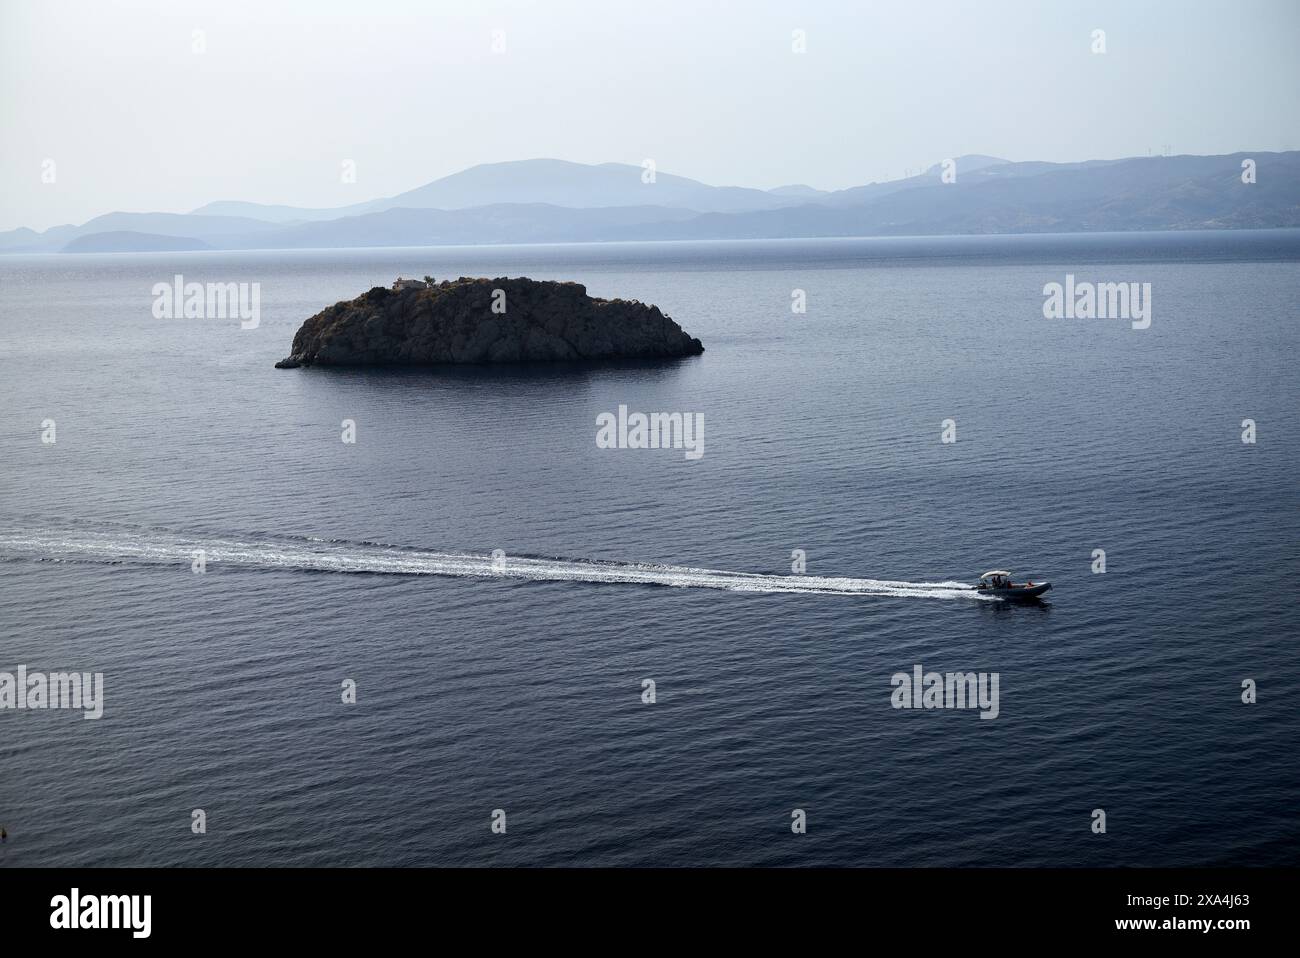 Ein Boot hinterlässt eine Spur auf dem ruhigen blauen Wasser, während es in Richtung einer kleinen felsigen Insel mit Bergen im fernen Hintergrund fährt. Stockfoto